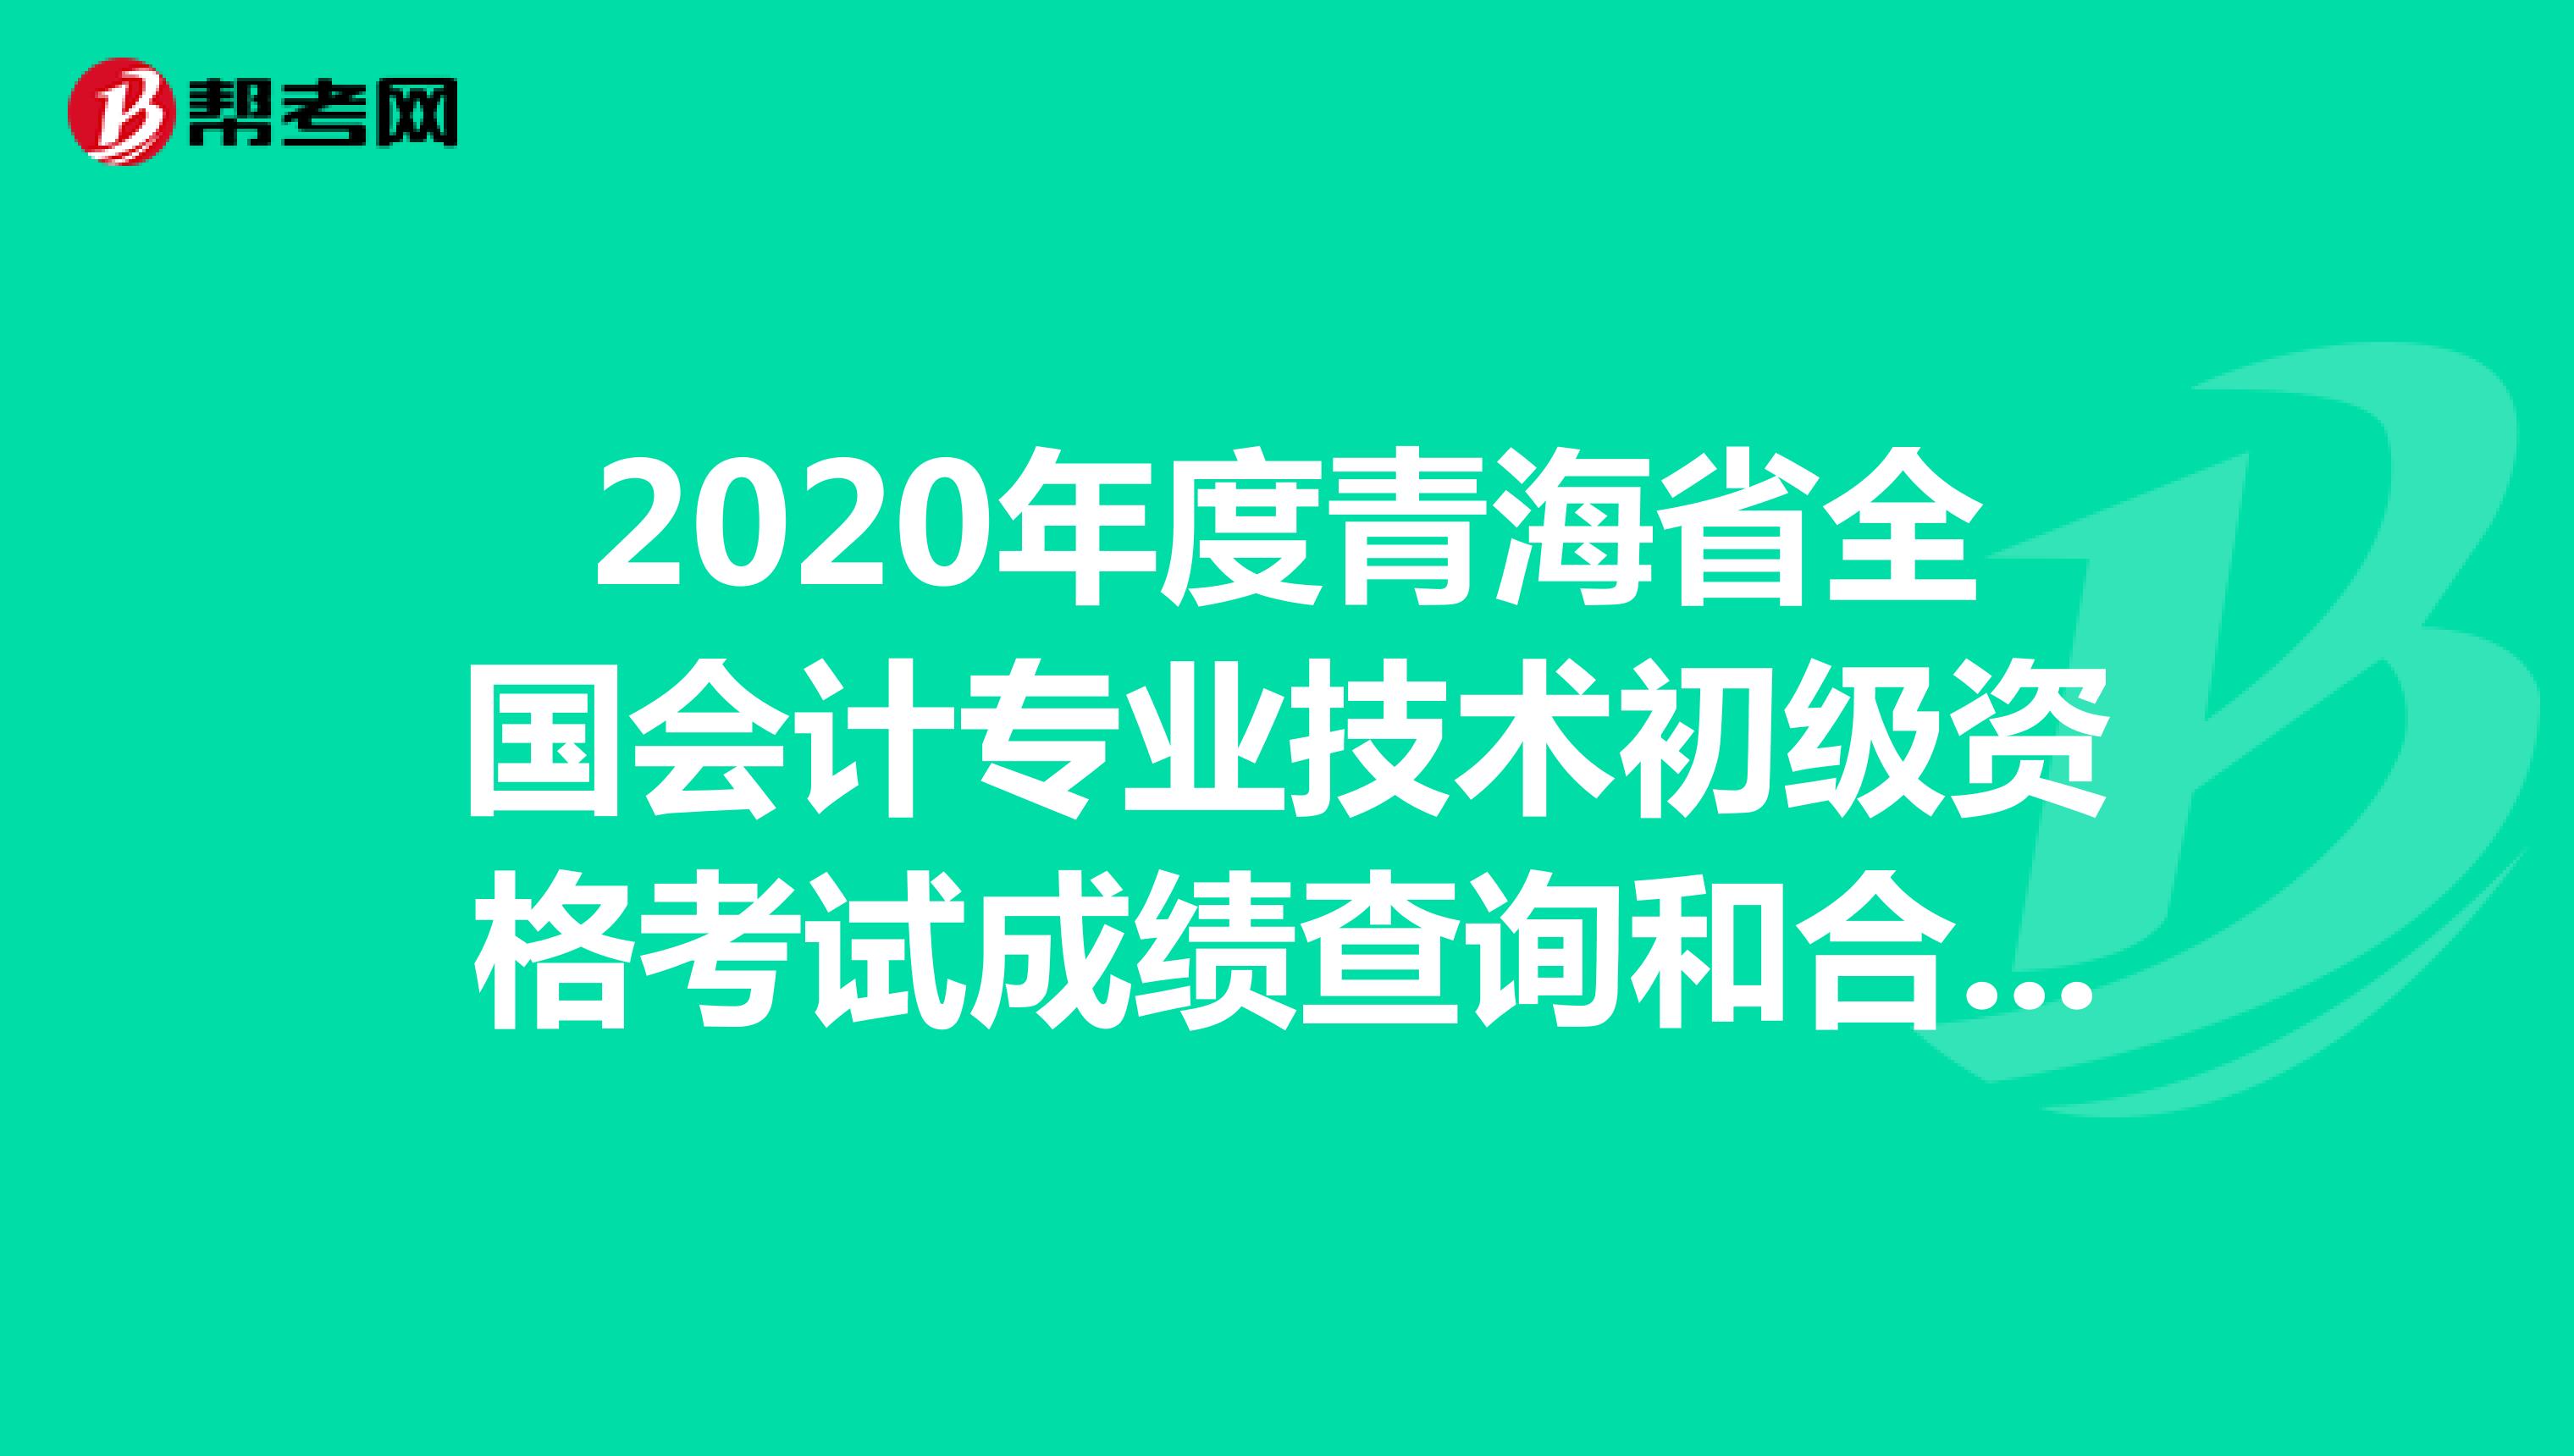 2020年度青海省全国会计专业技术初级资格考试成绩查询和合格人员信息审核的通知已公布